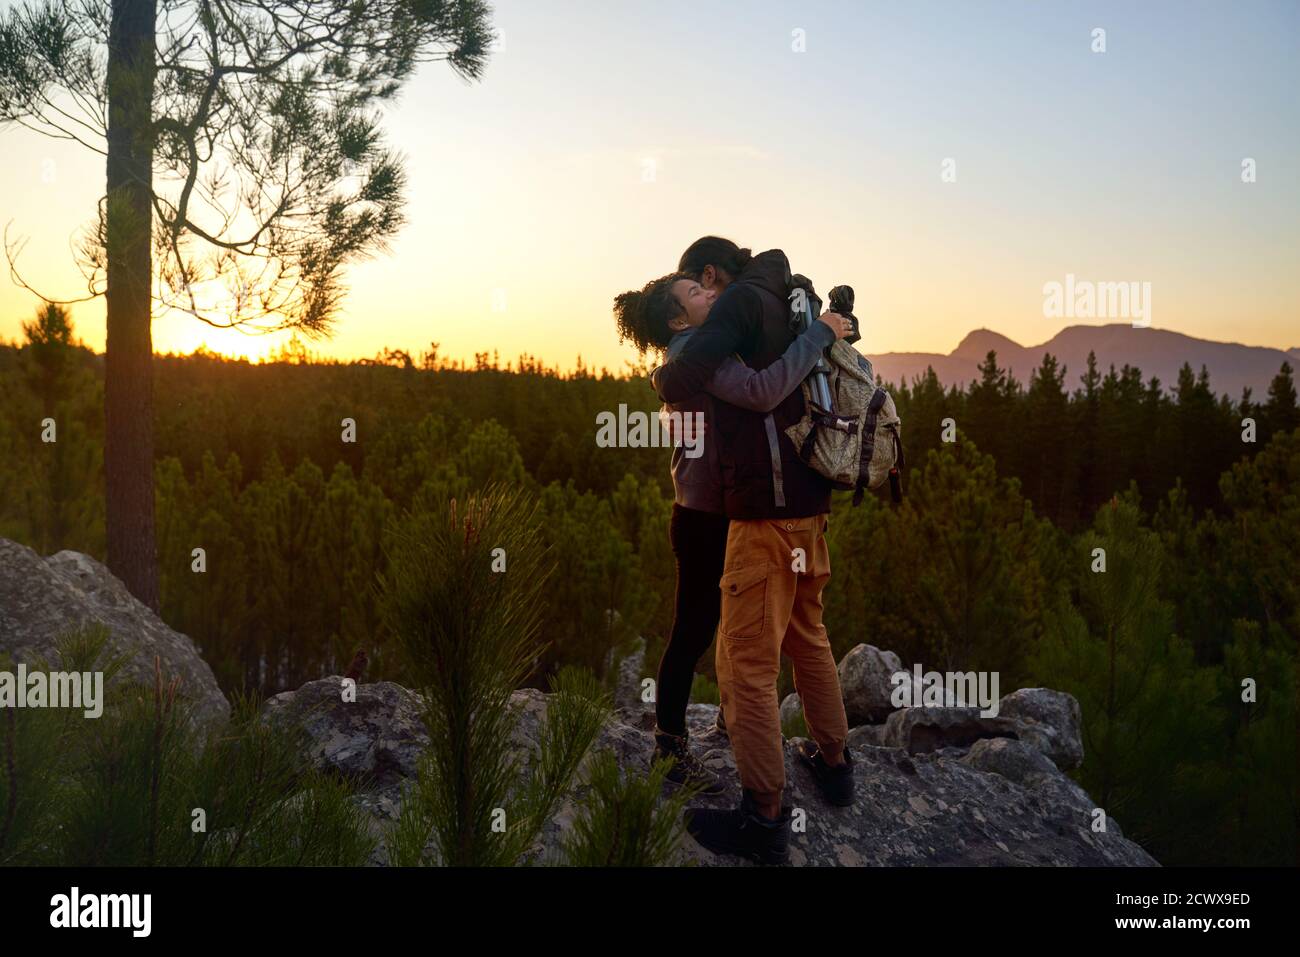 Un jeune couple de randonneurs affectueux qui fait des randonnées sur des rochers dans des bois au coucher du soleil Banque D'Images